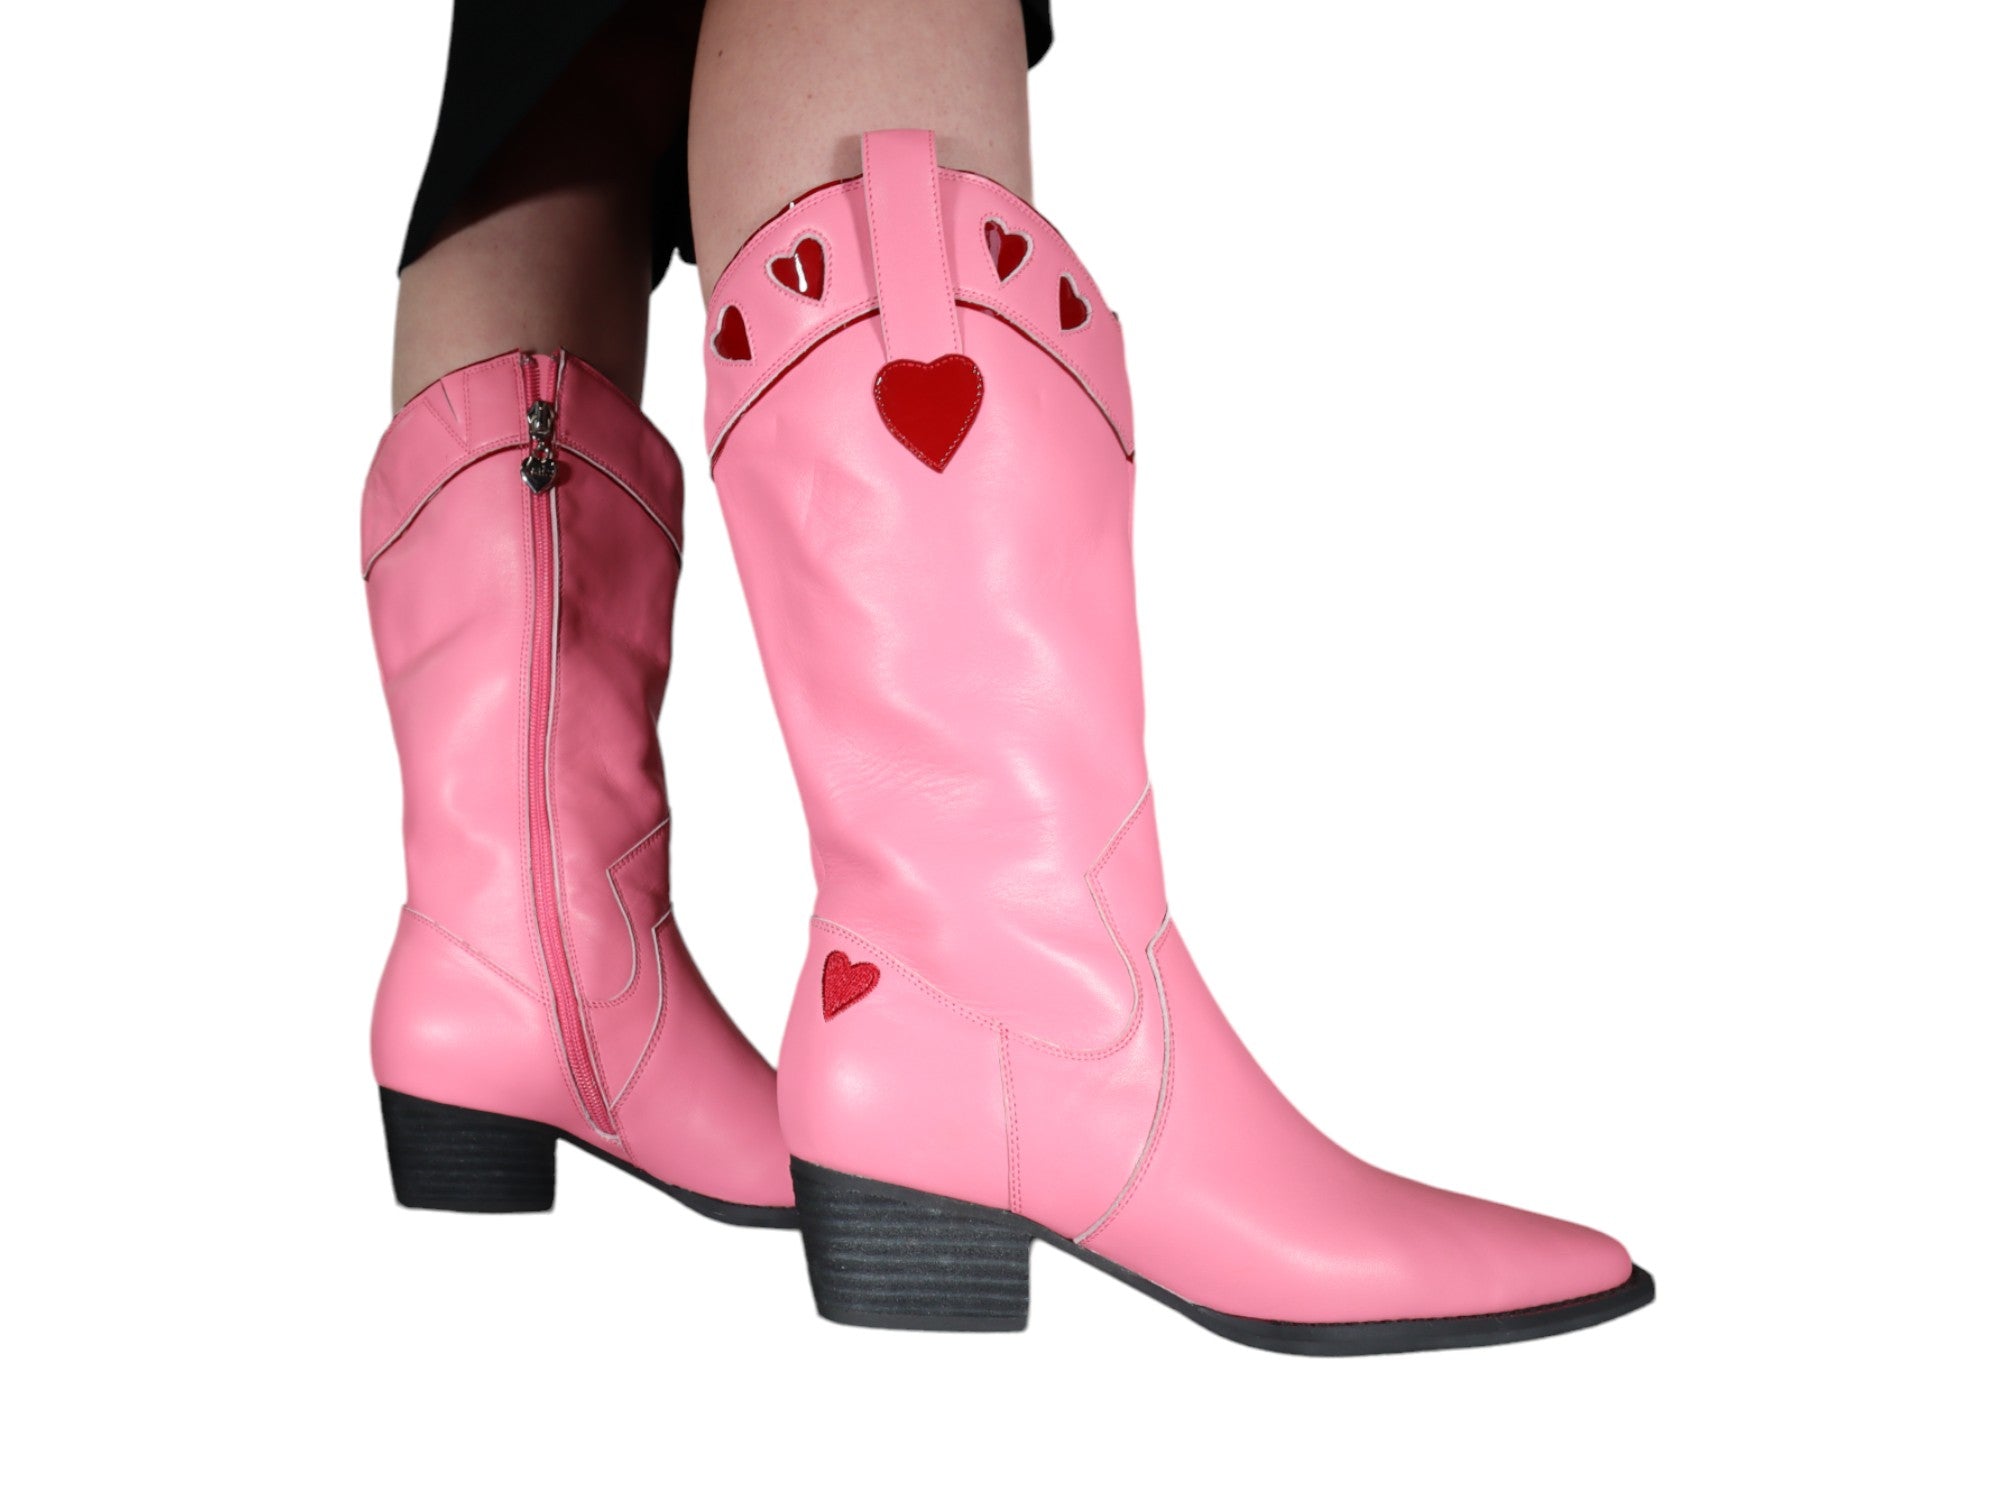 Minx Matilda Western Boots - Women's